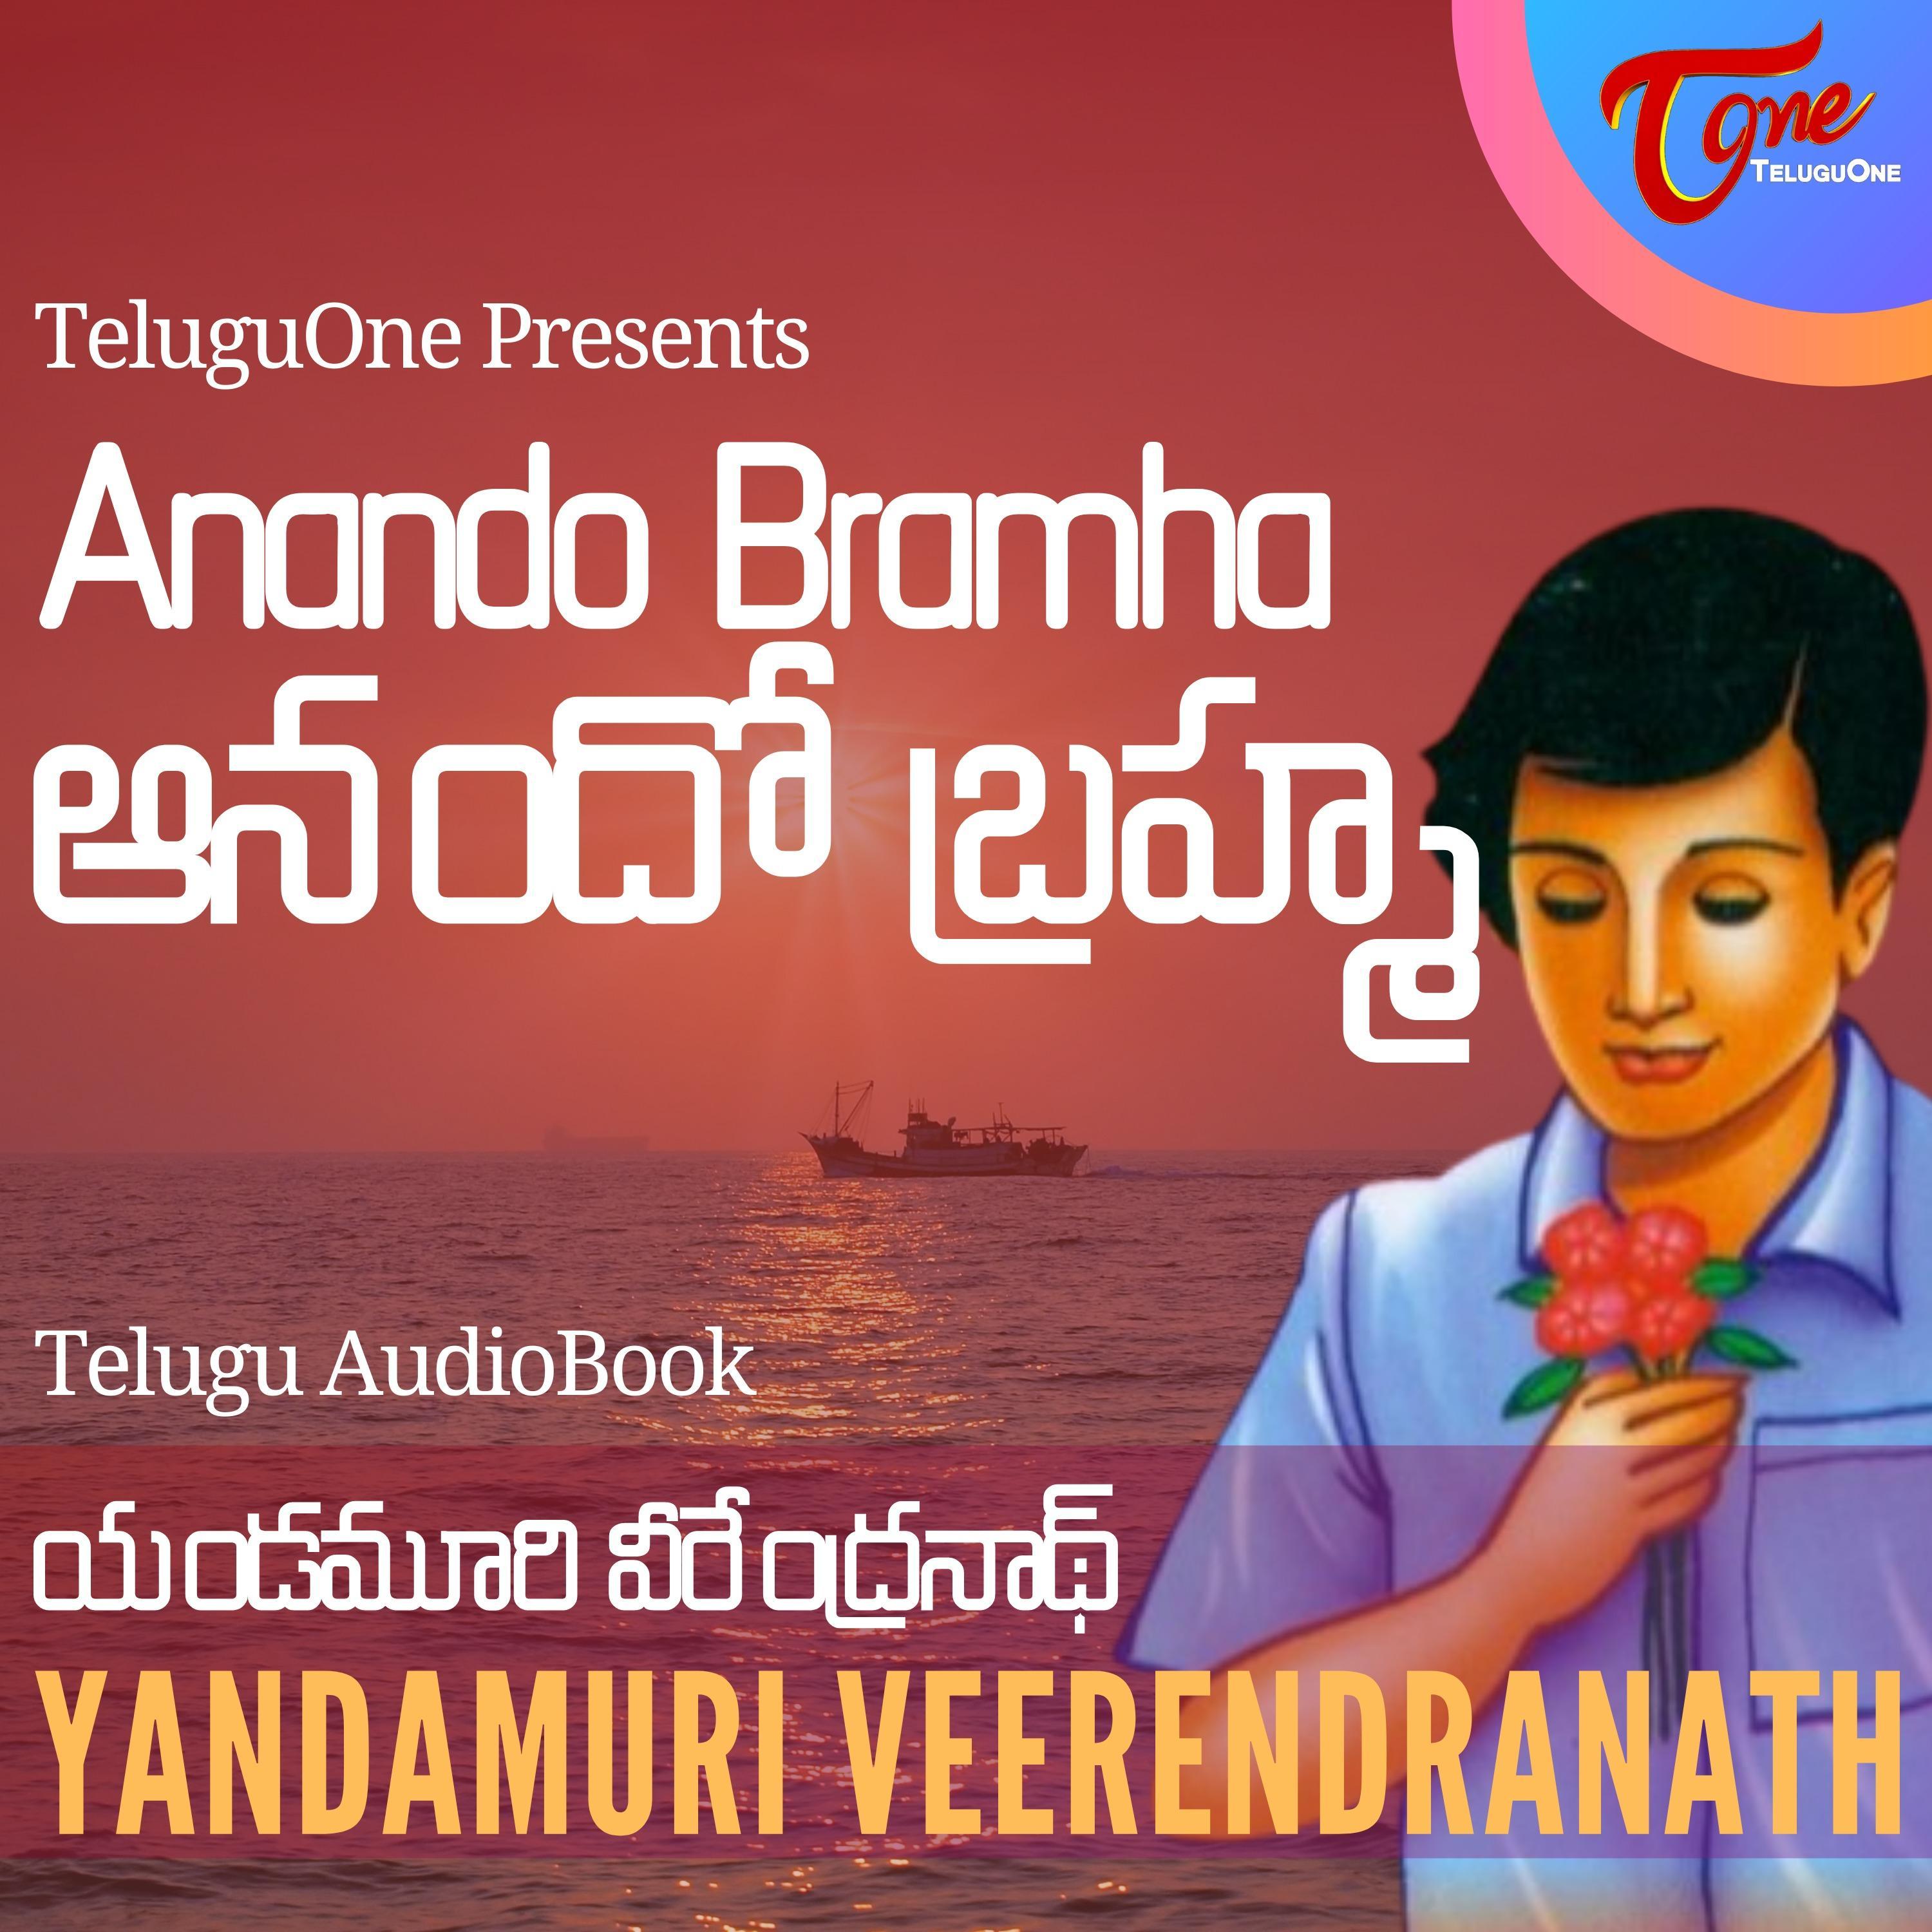 Ep 15 - Anando Bramha by Yandamoori Veerendranath - AudioBook